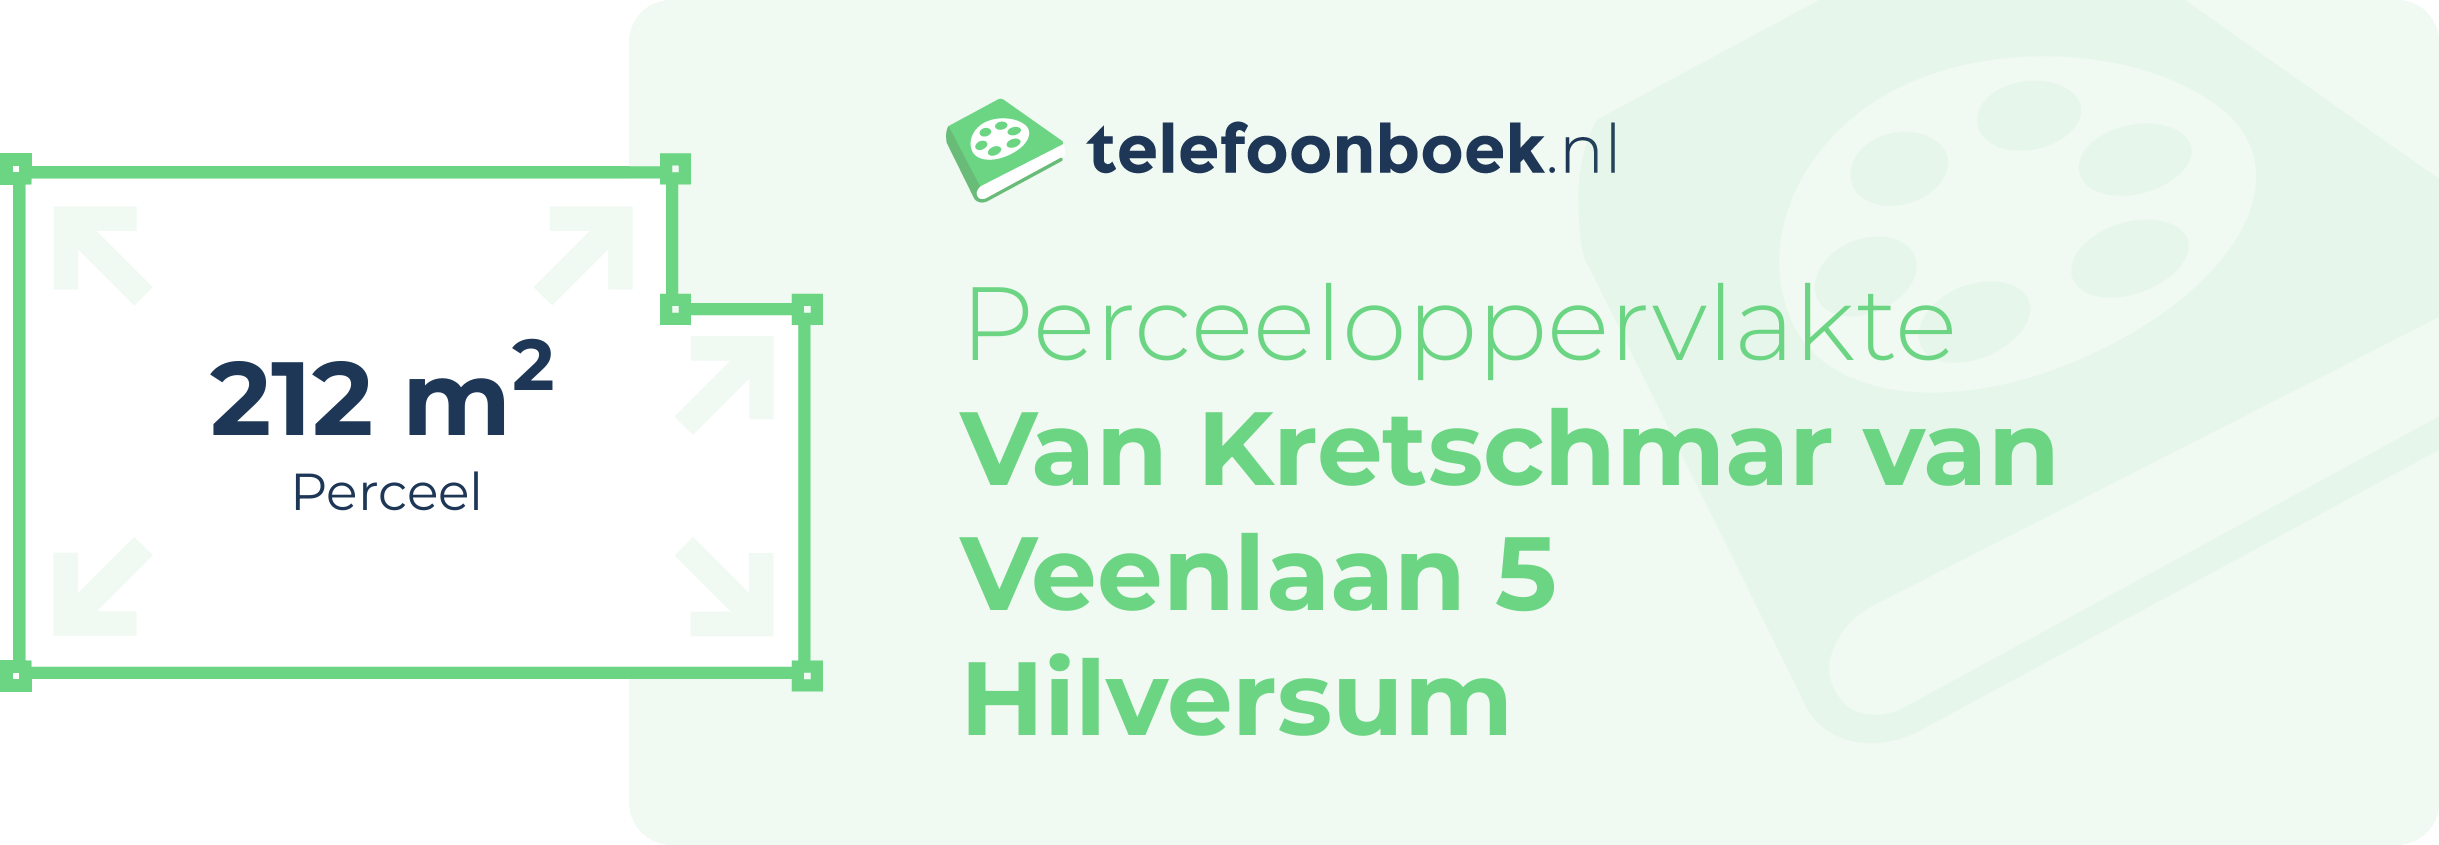 Perceeloppervlakte Van Kretschmar Van Veenlaan 5 Hilversum